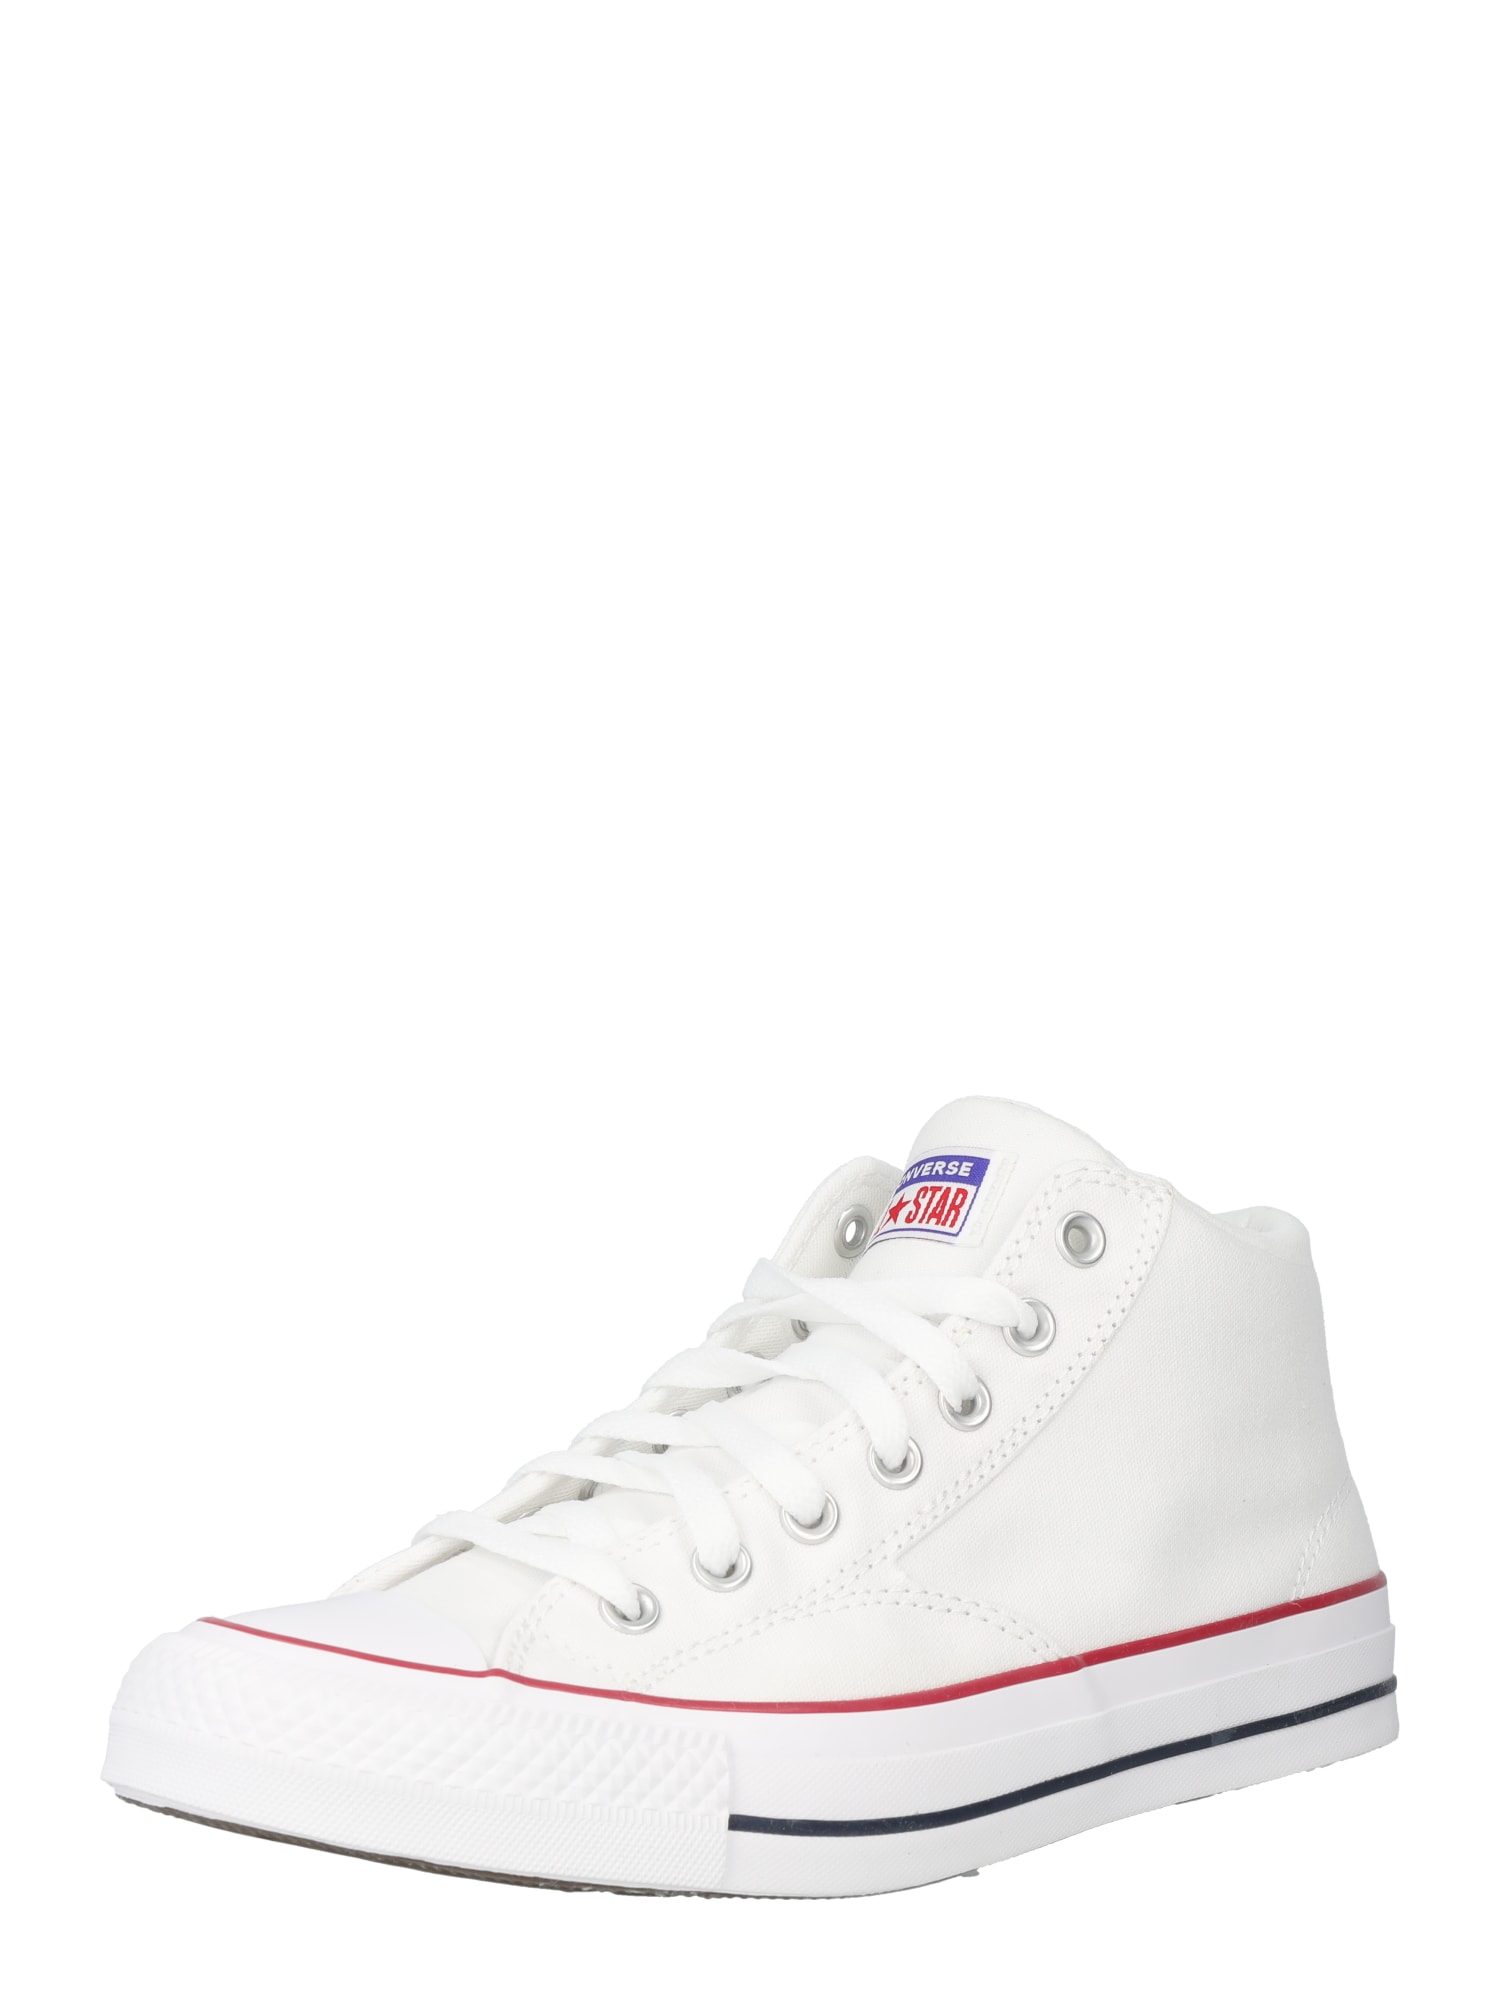 Converse CONVERSE Sneaker 'Chuck Taylor All Star Malden Street' rot / weiß